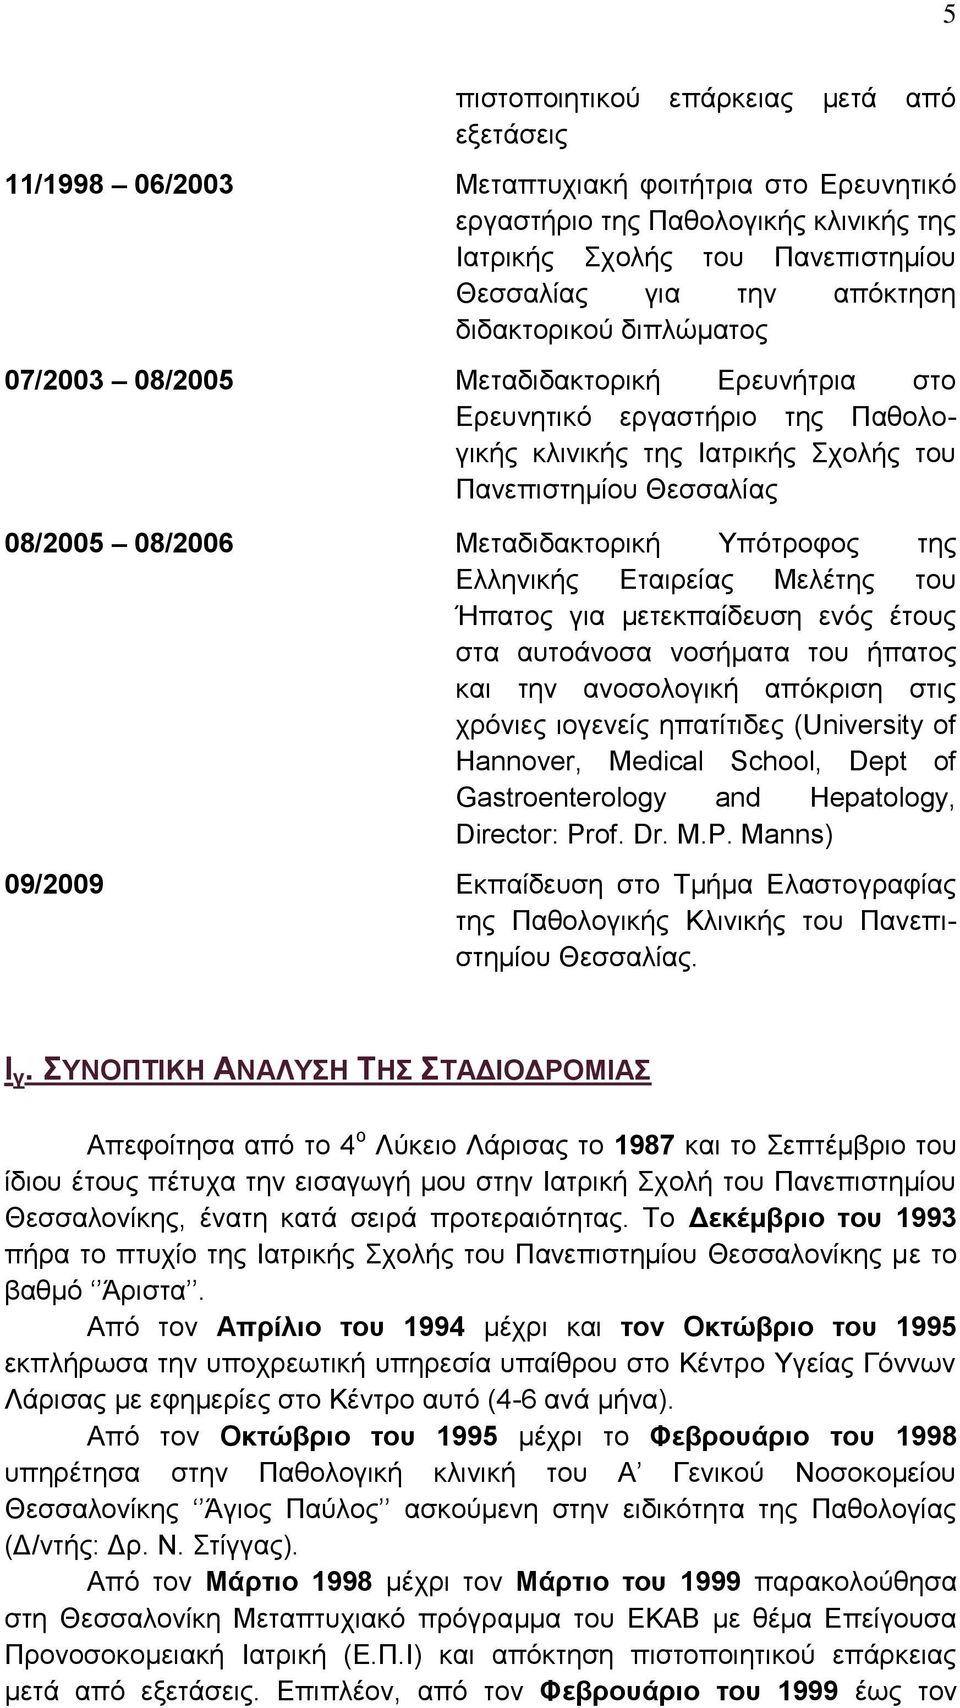 Μεταδιδακτορική Υπότροφος της Ελληνικής Εταιρείας Μελέτης του Ήπατος για μετεκπαίδευση ενός έτους στα αυτοάνοσα νοσήματα του ήπατος και την ανοσολογική απόκριση στις χρόνιες ιογενείς ηπατίτιδες